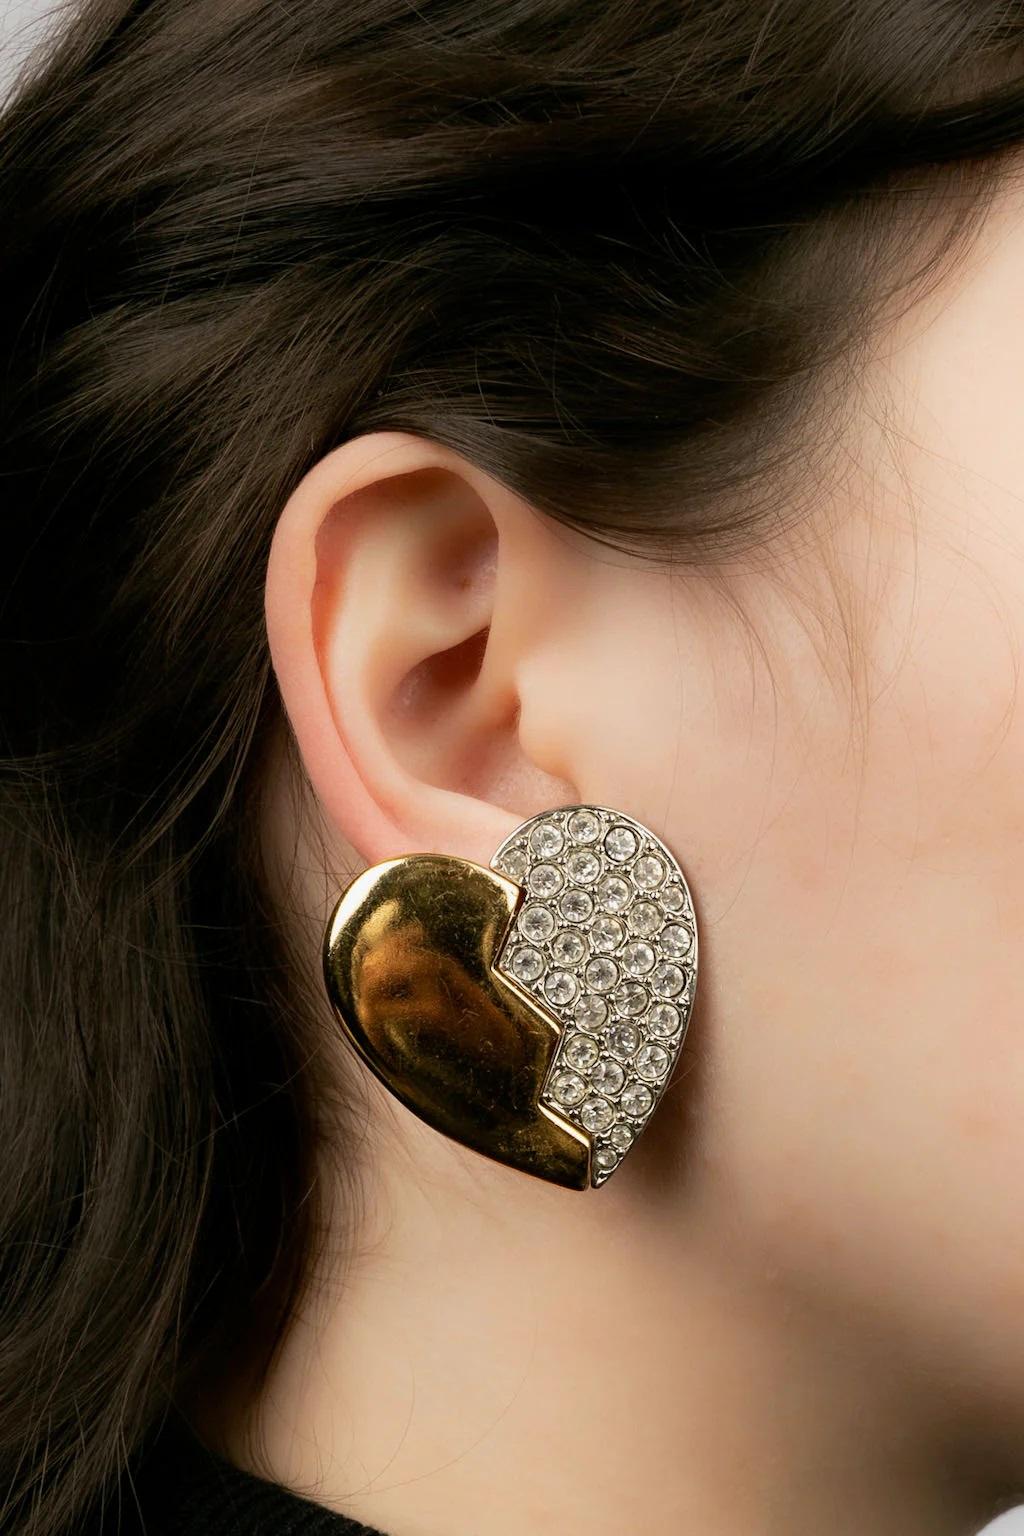 Yves Saint Laurent - Herz-Ohrringe aus Metall und Strass. Seltene Kratzer auf dem Metall.

Zusätzliche Informationen:
Abmessungen: 3,5 B x 4 H cm
Zustand: Sehr guter Zustand
Verkäufer-Referenznummer: BO217